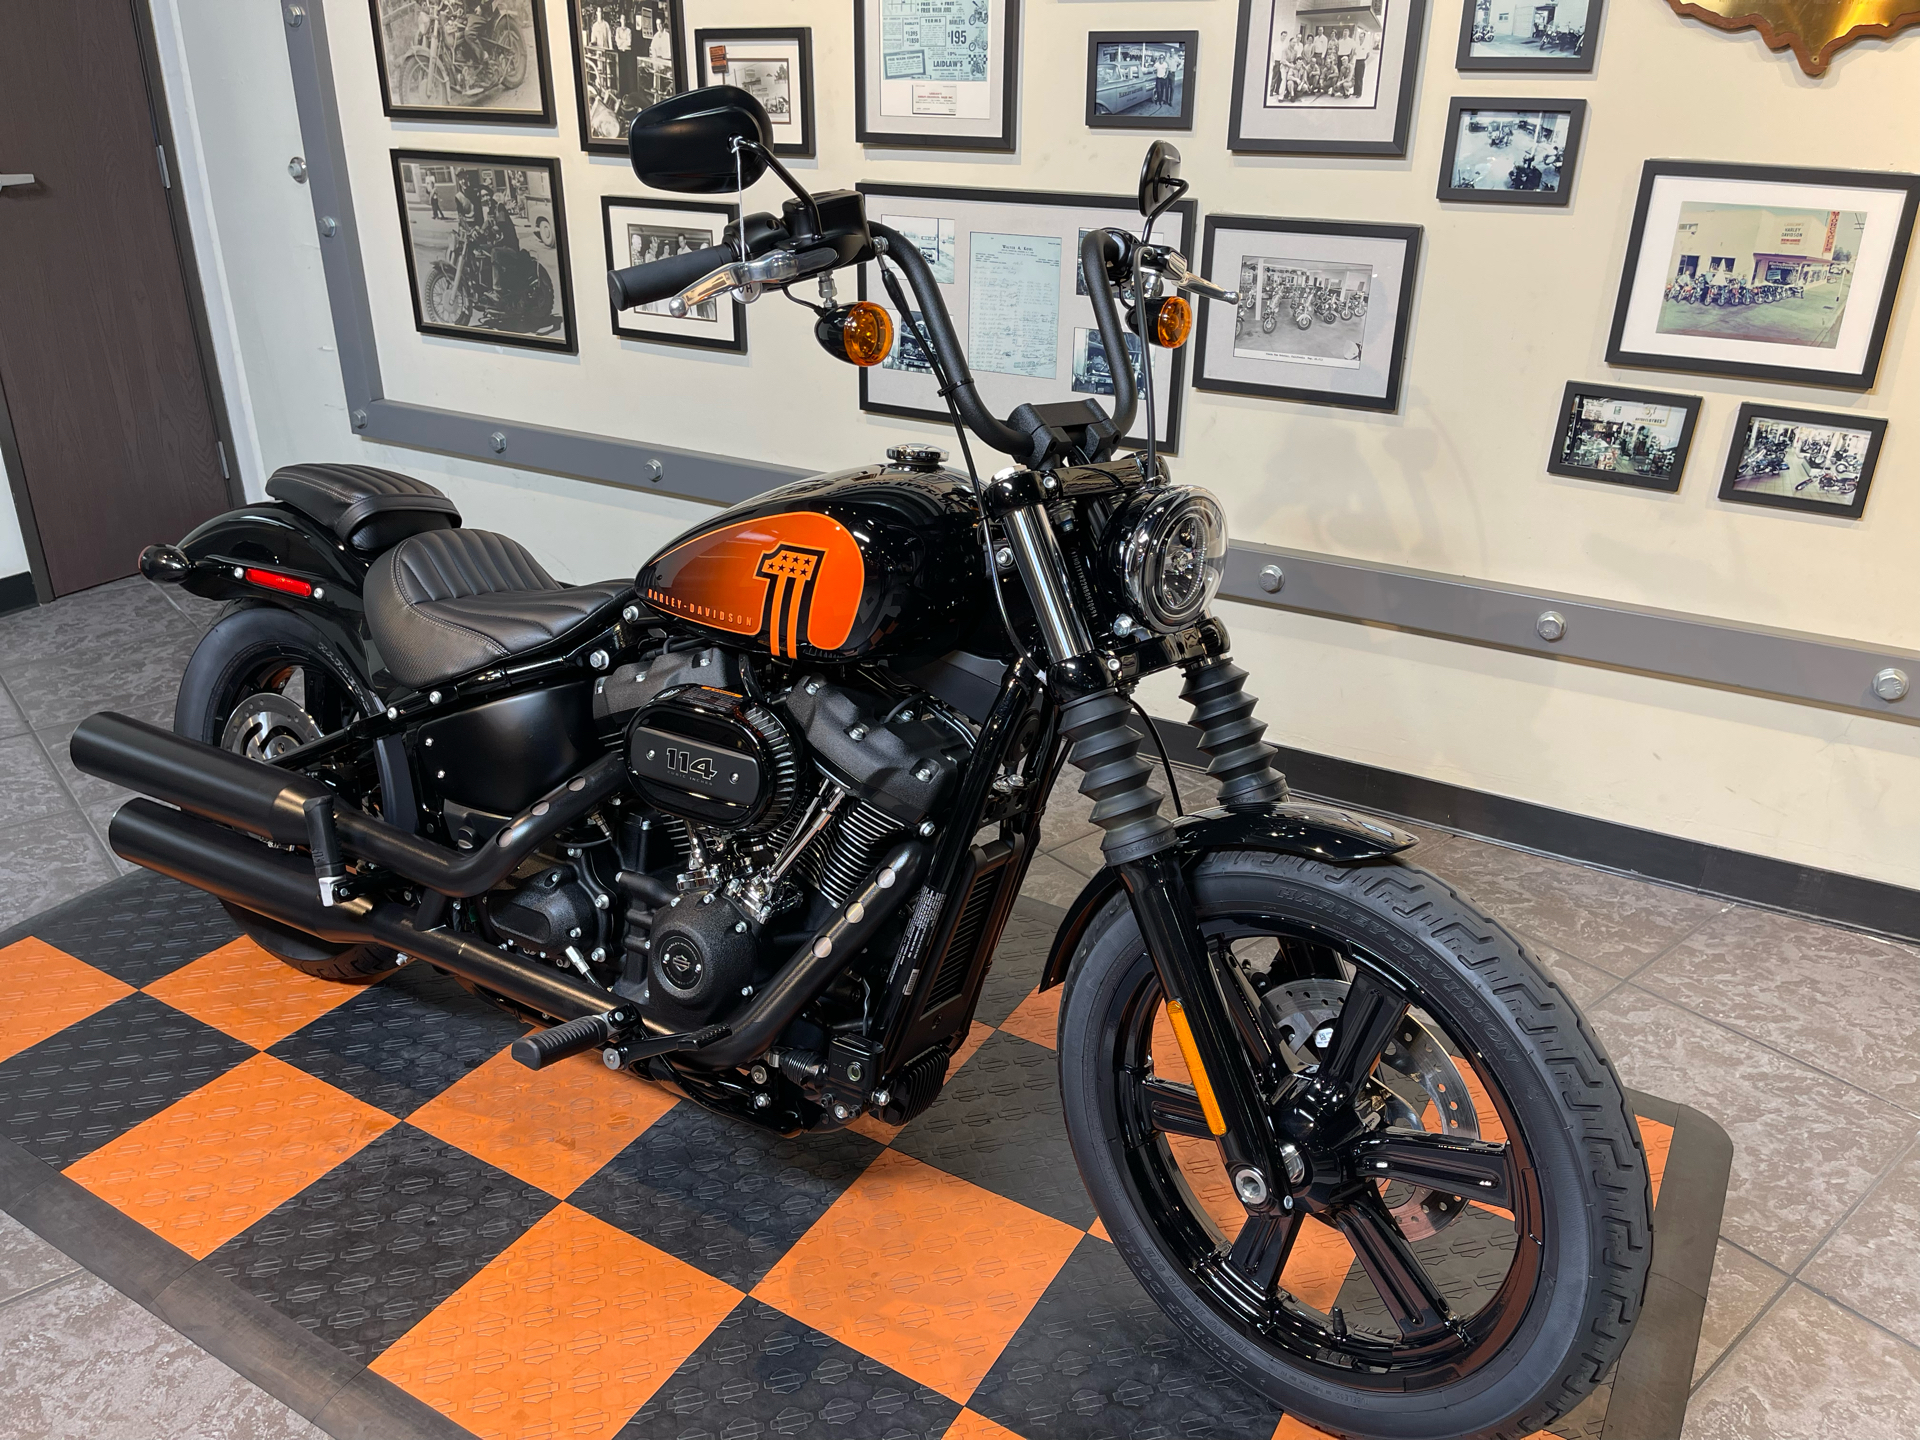 2022 Harley-Davidson Street Bob® 114 in Baldwin Park, California - Photo 8